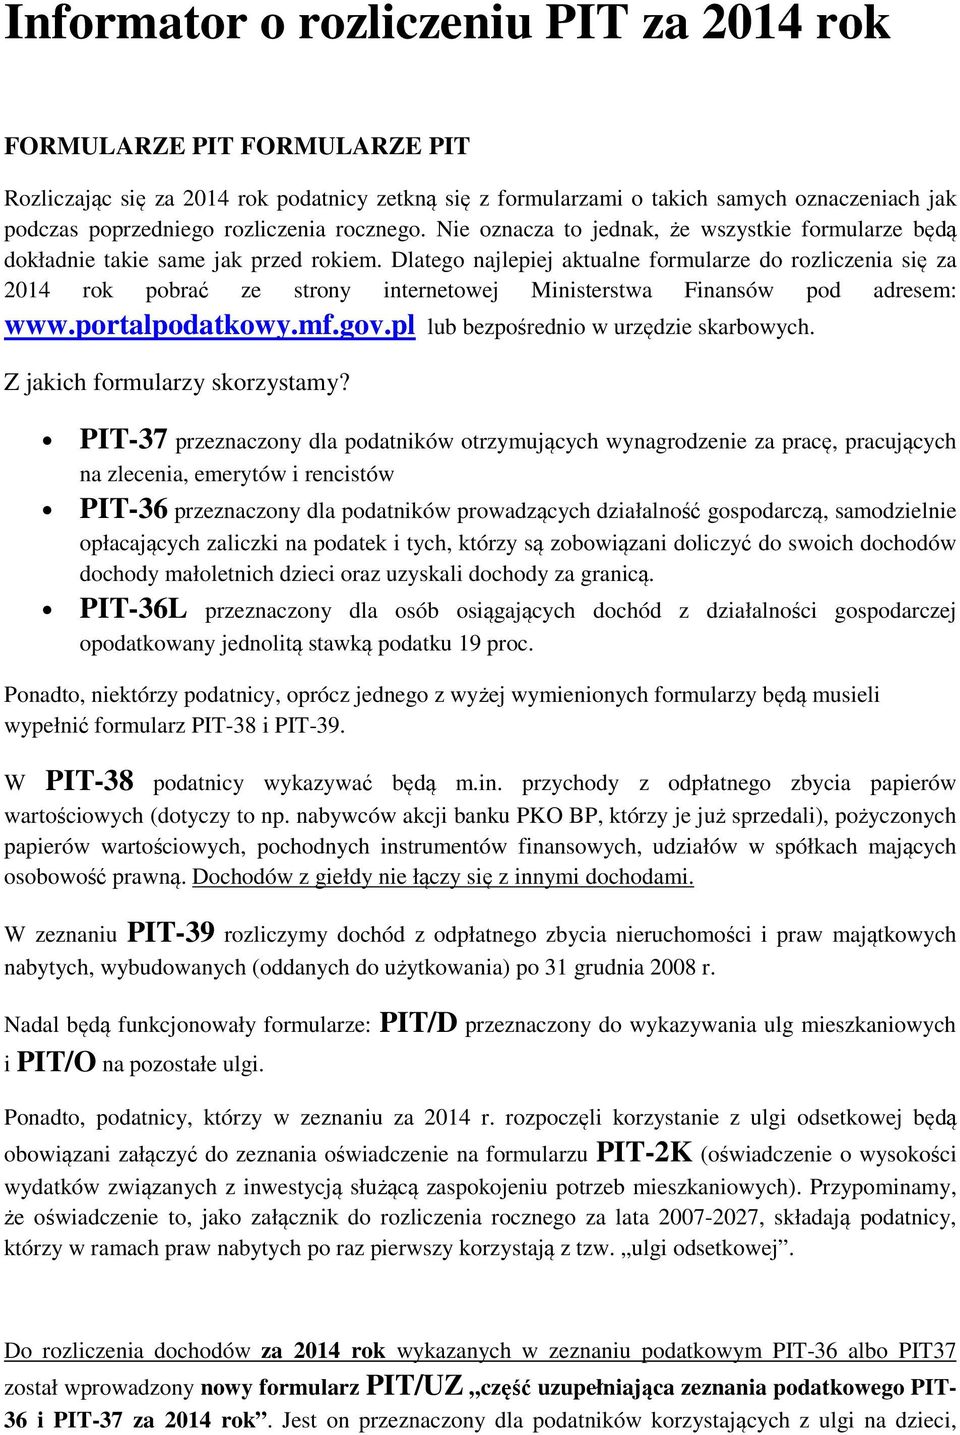 Dlatego najlepiej aktualne formularze do rozliczenia się za 2014 rok pobrać ze strony internetowej Ministerstwa Finansów pod adresem: www.portalpodatkowy.mf.gov.